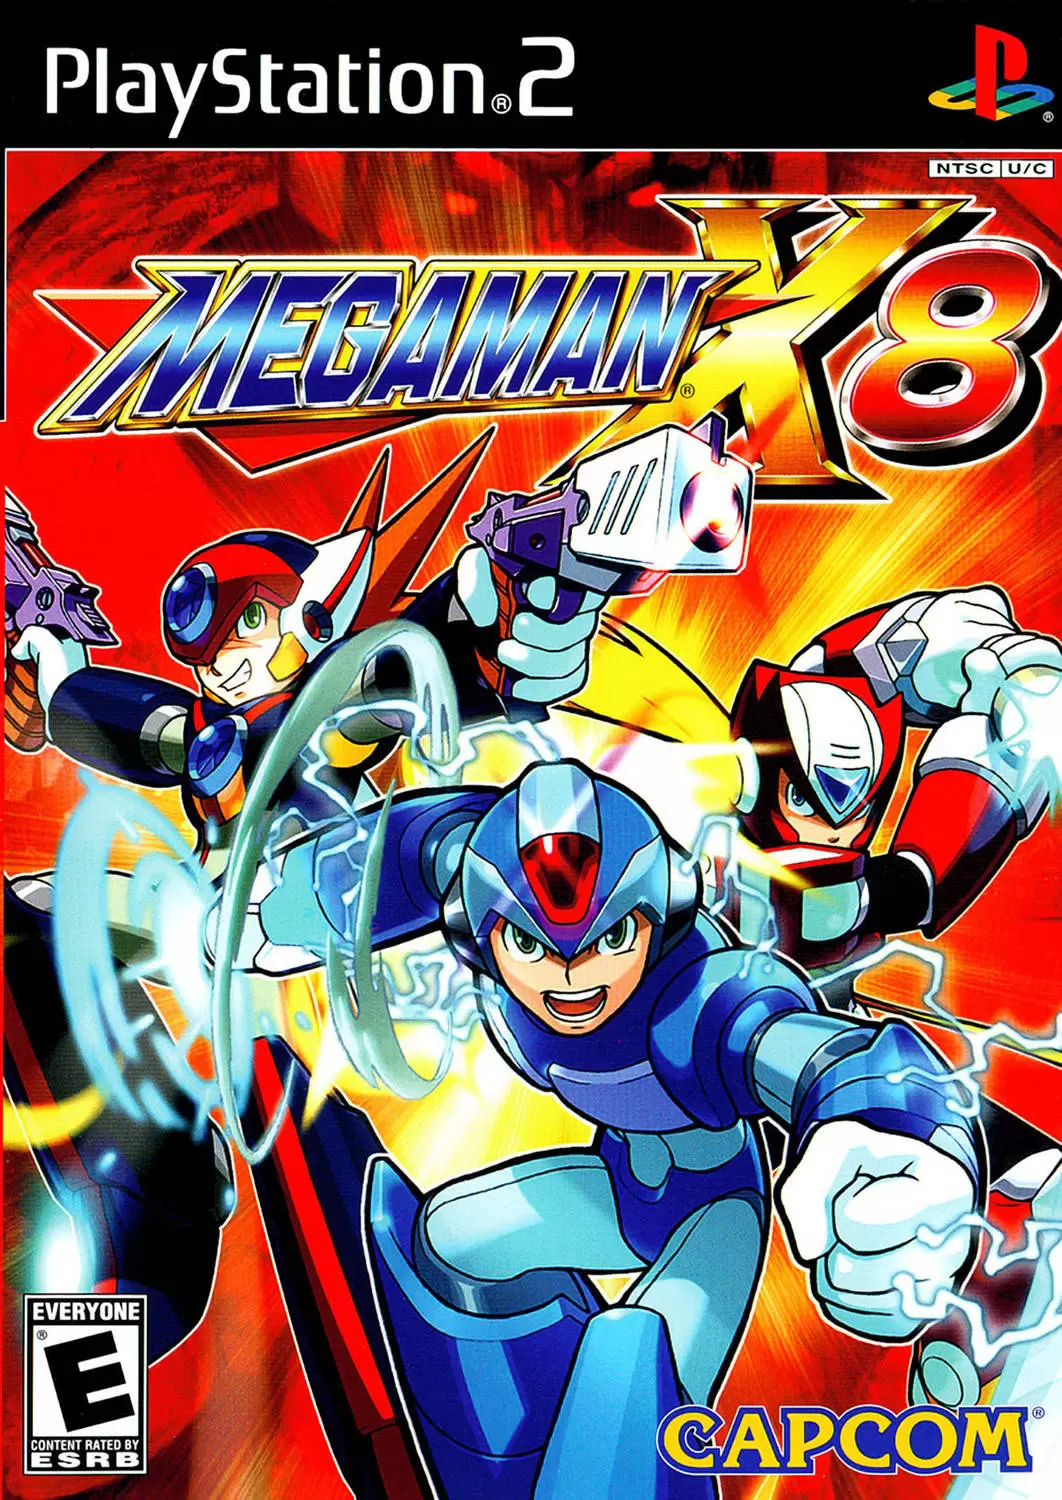 PS2 Games - Mega Man X8